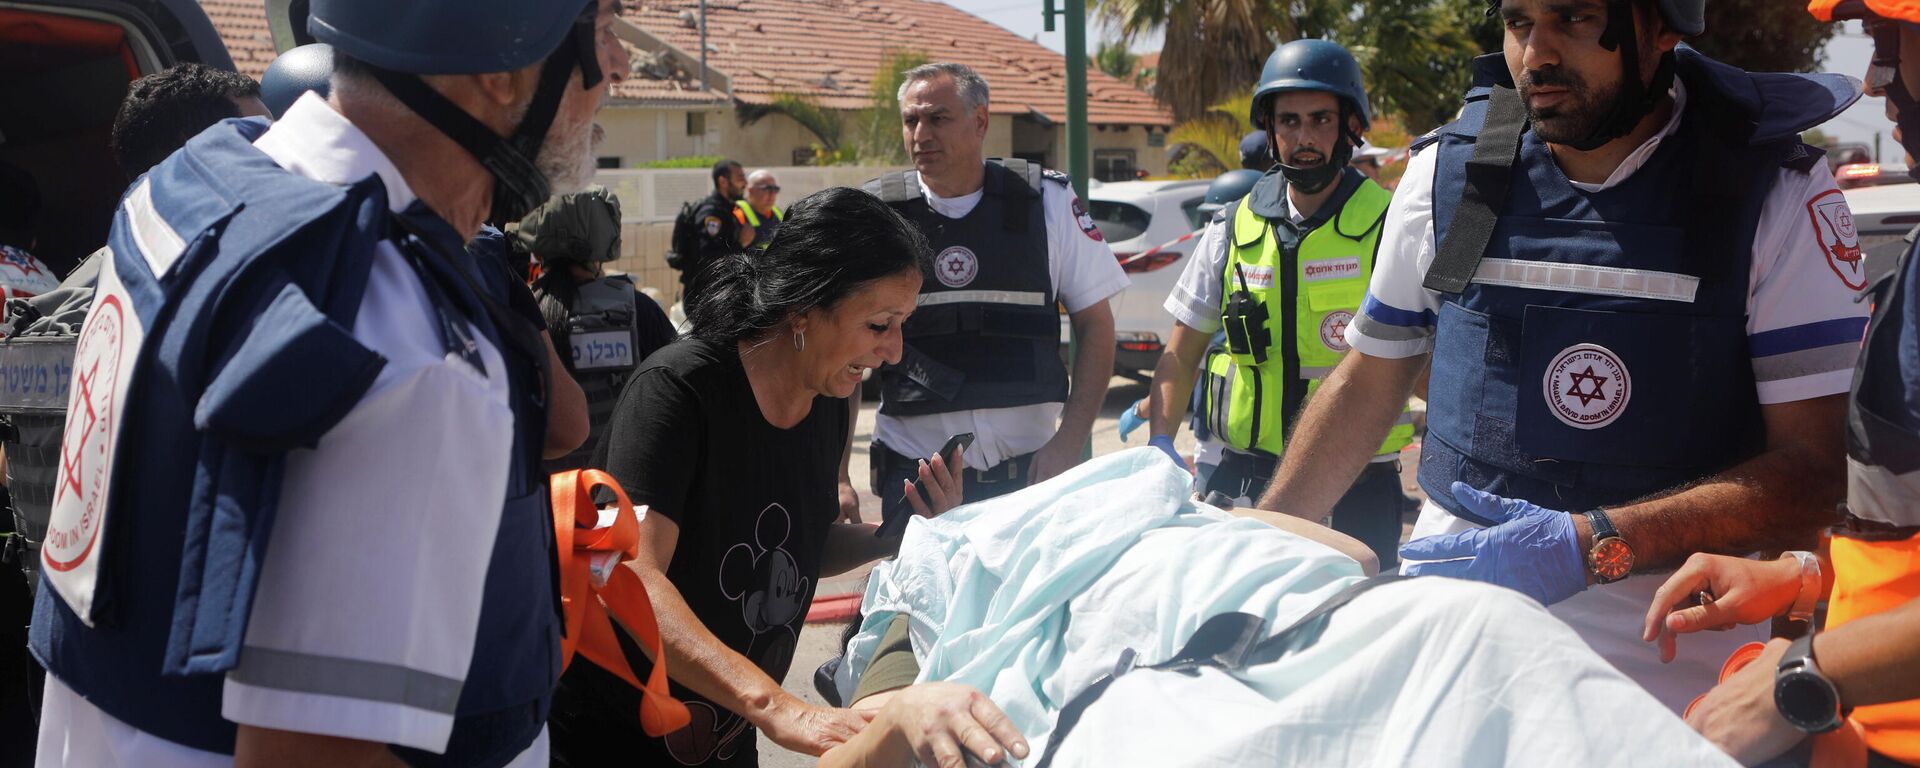 Los médicos evacuan a una persona herida después de que un cohete lanzado desde la Franja de Gaza golpeara una casa en Ashkelon, Israel - Sputnik Mundo, 1920, 27.05.2021